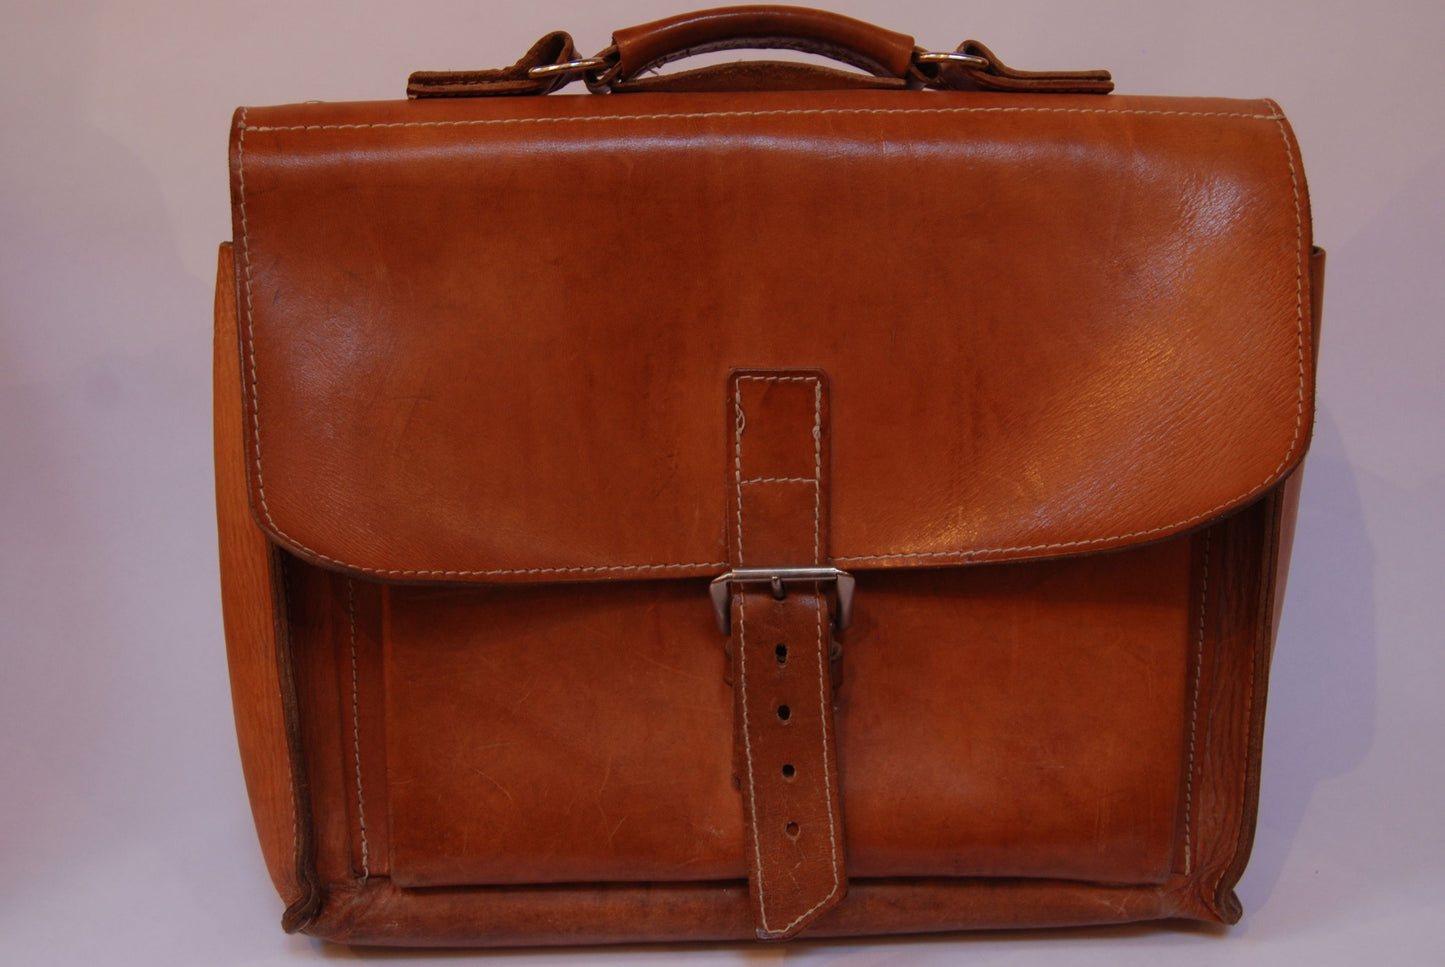 Vintage tan leather shoulder bag / backpack